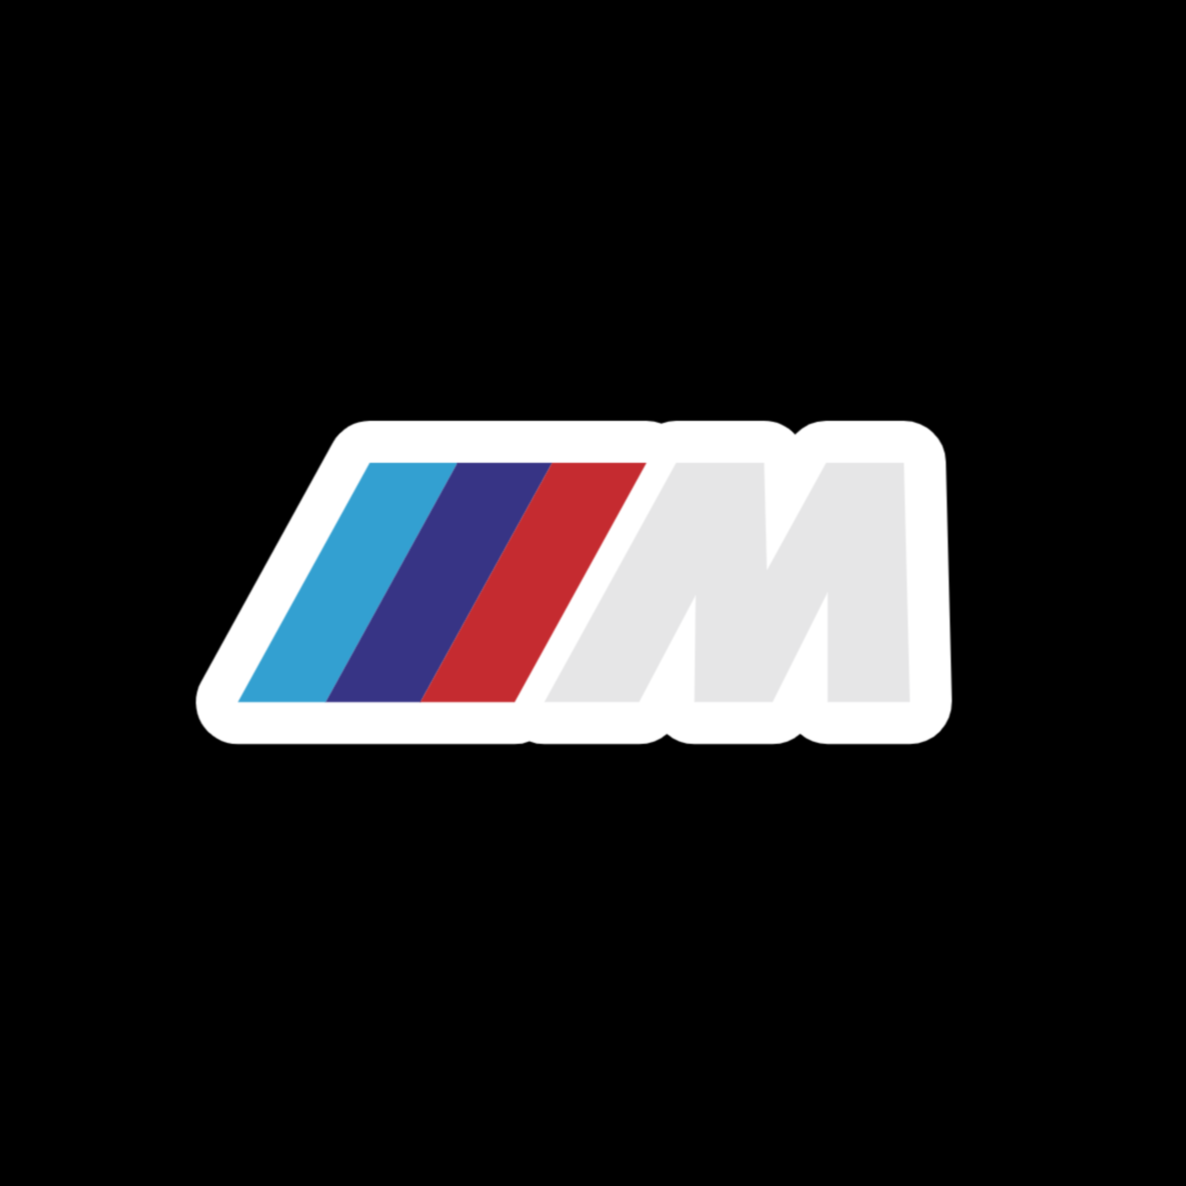 Bmw M Logo Sticker – RamonsVinyls